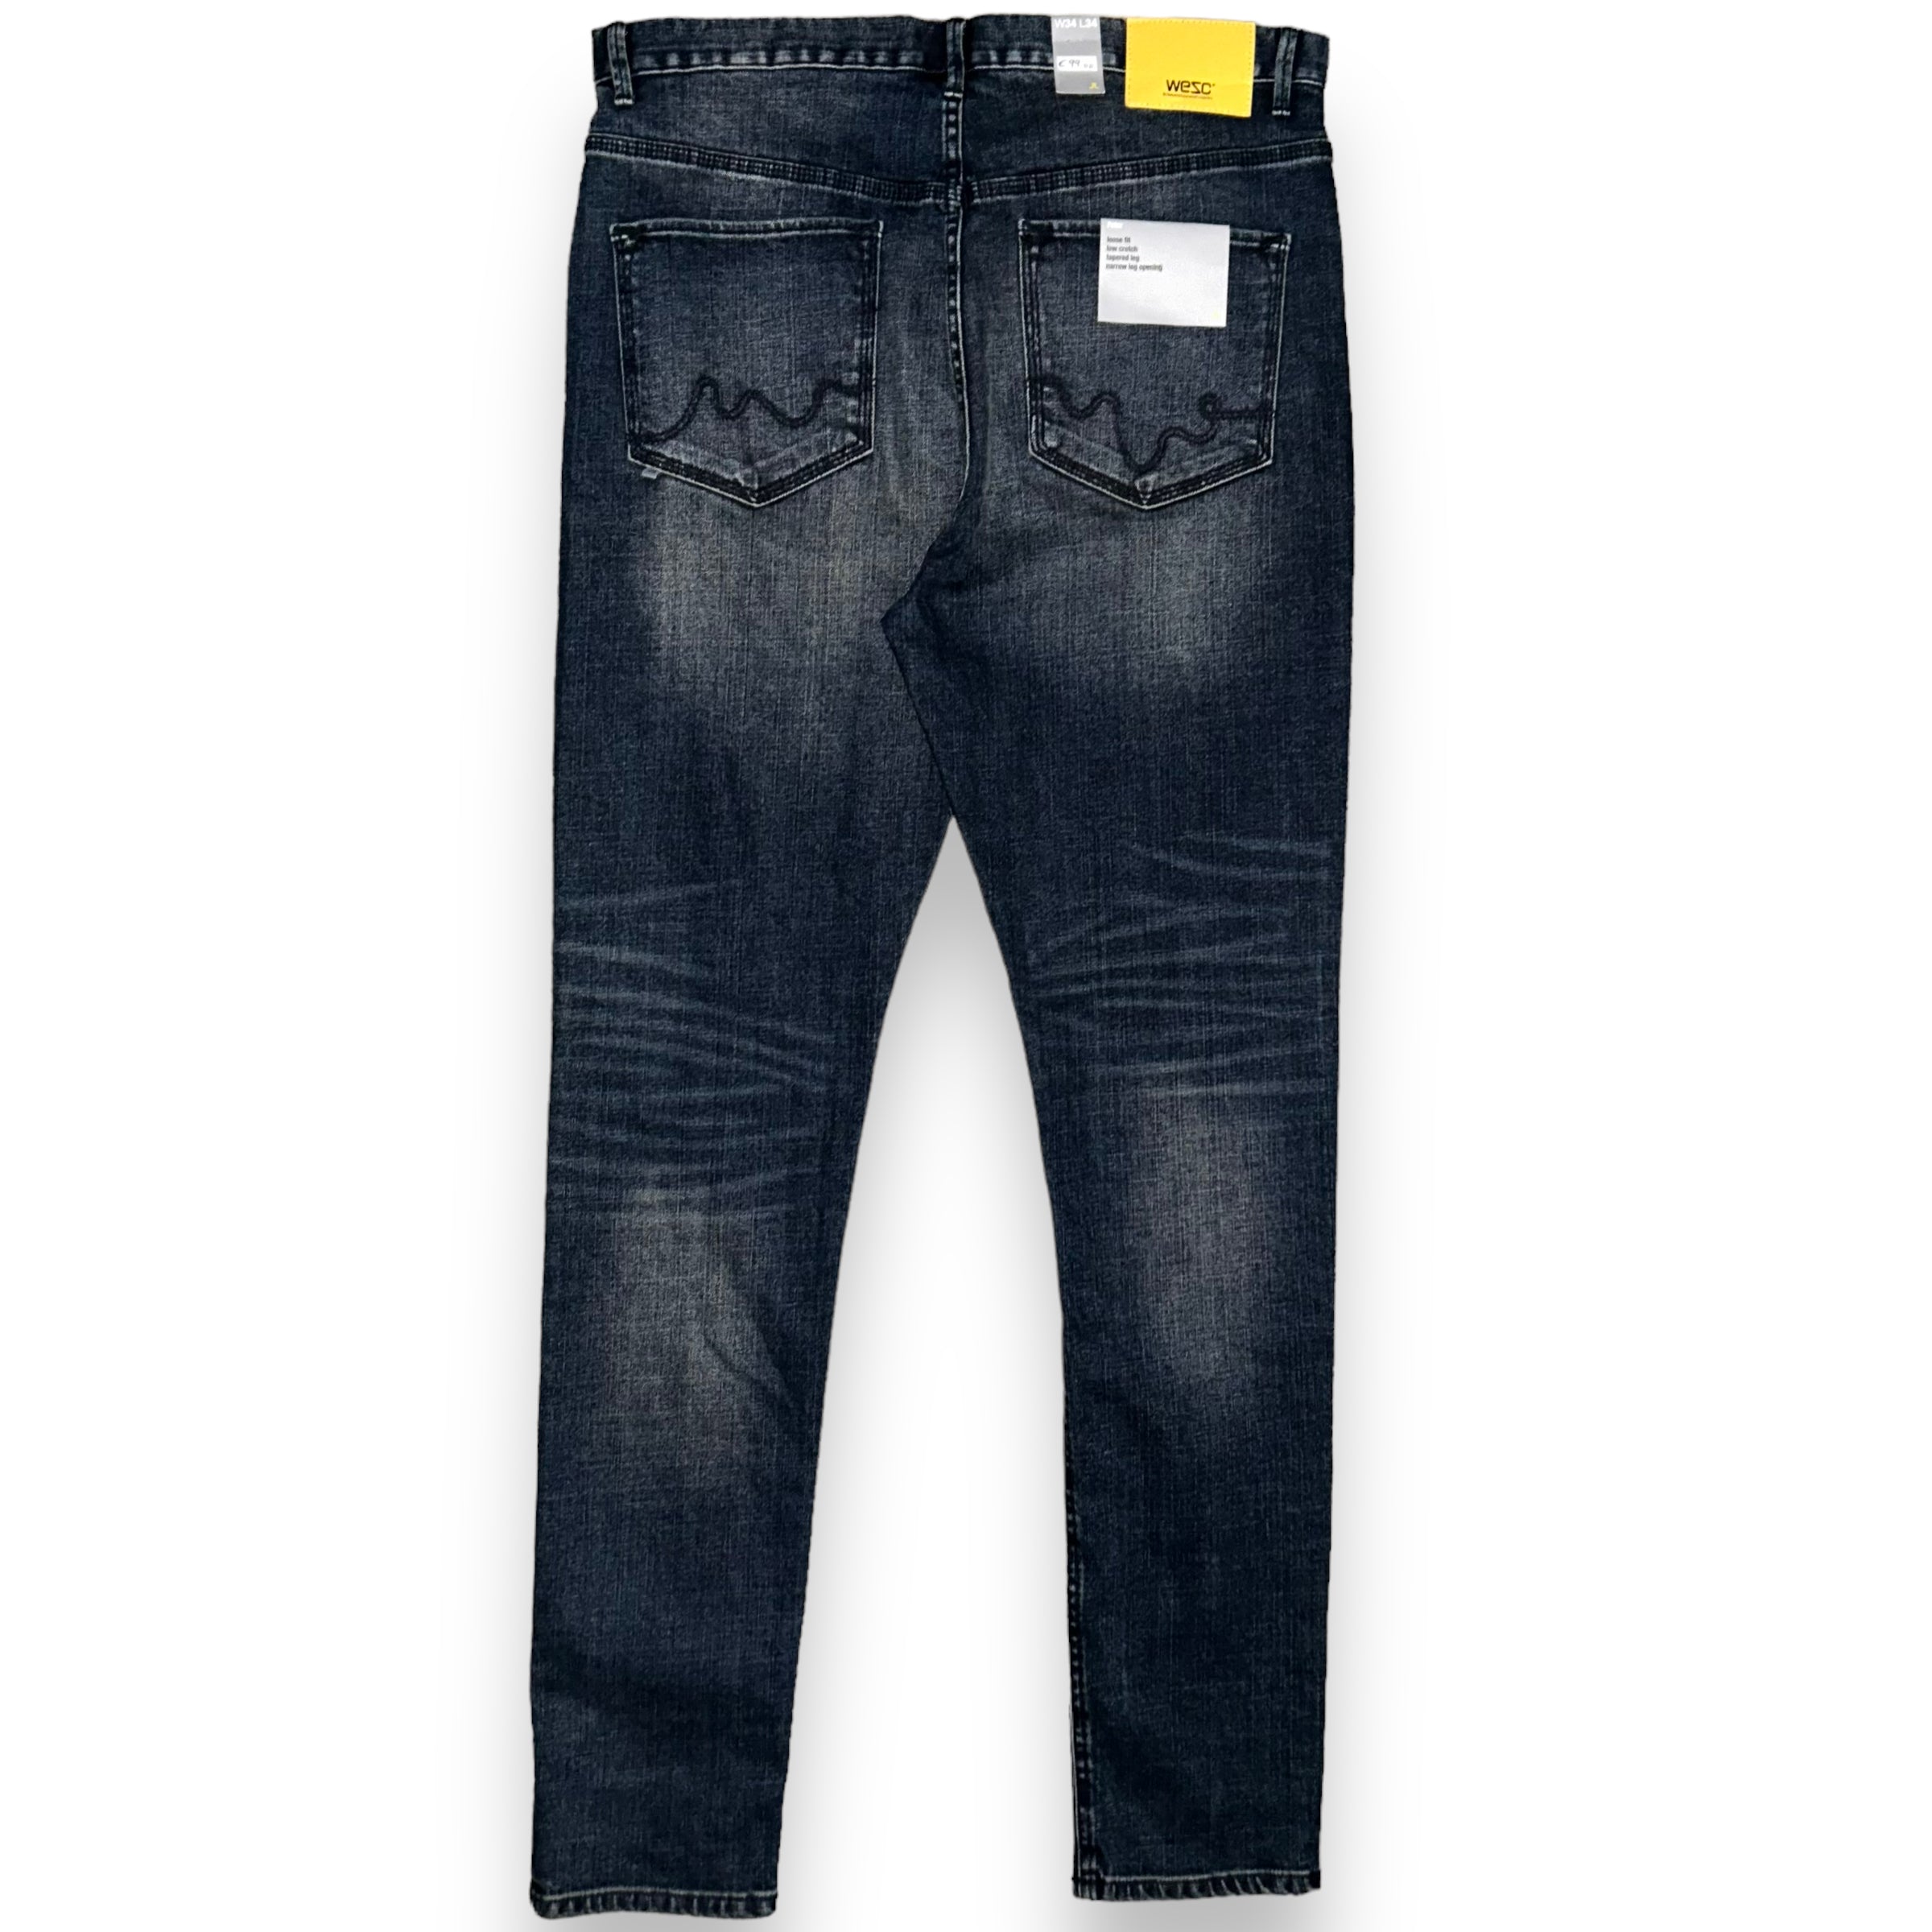 Wesc jeans (34 US L)